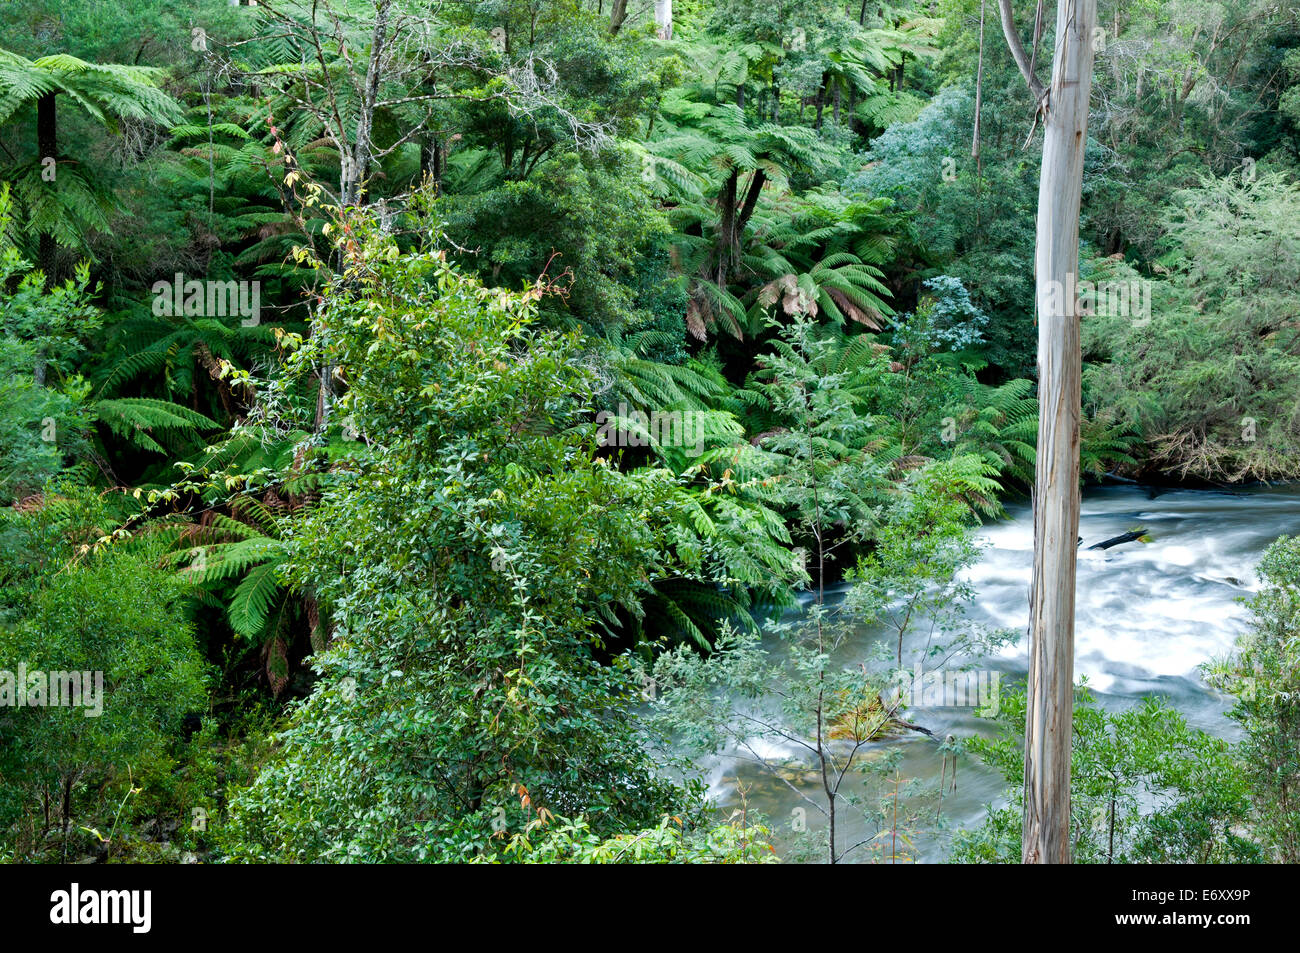 Fraîche forêt tropicale le long Errinindra Errinundra, River National Park, Victoria, Australie Banque D'Images